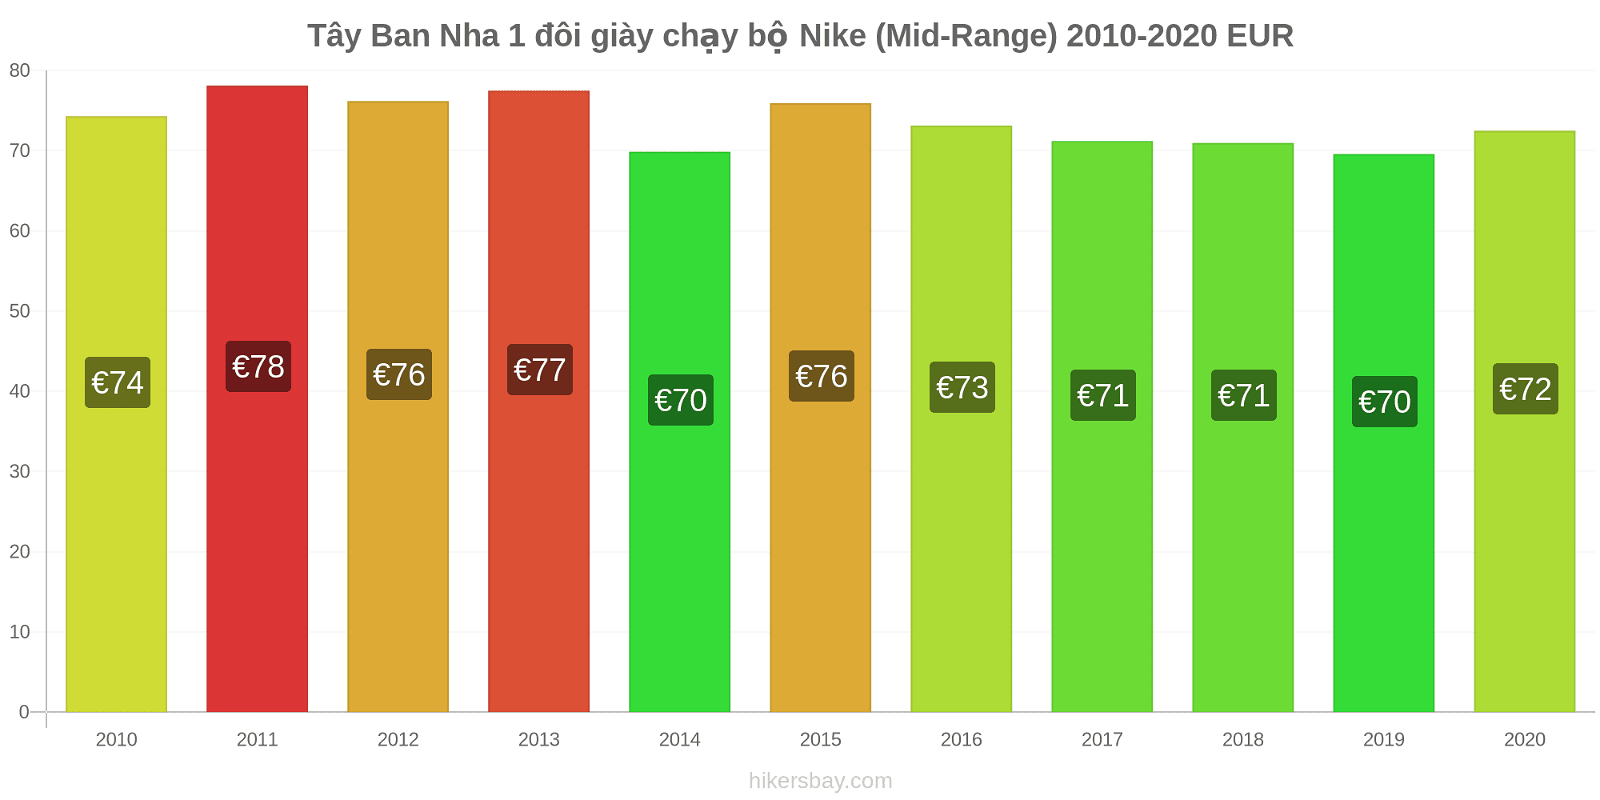 Tây Ban Nha thay đổi giá 1 đôi giày chạy bộ Nike (Mid-Range) hikersbay.com